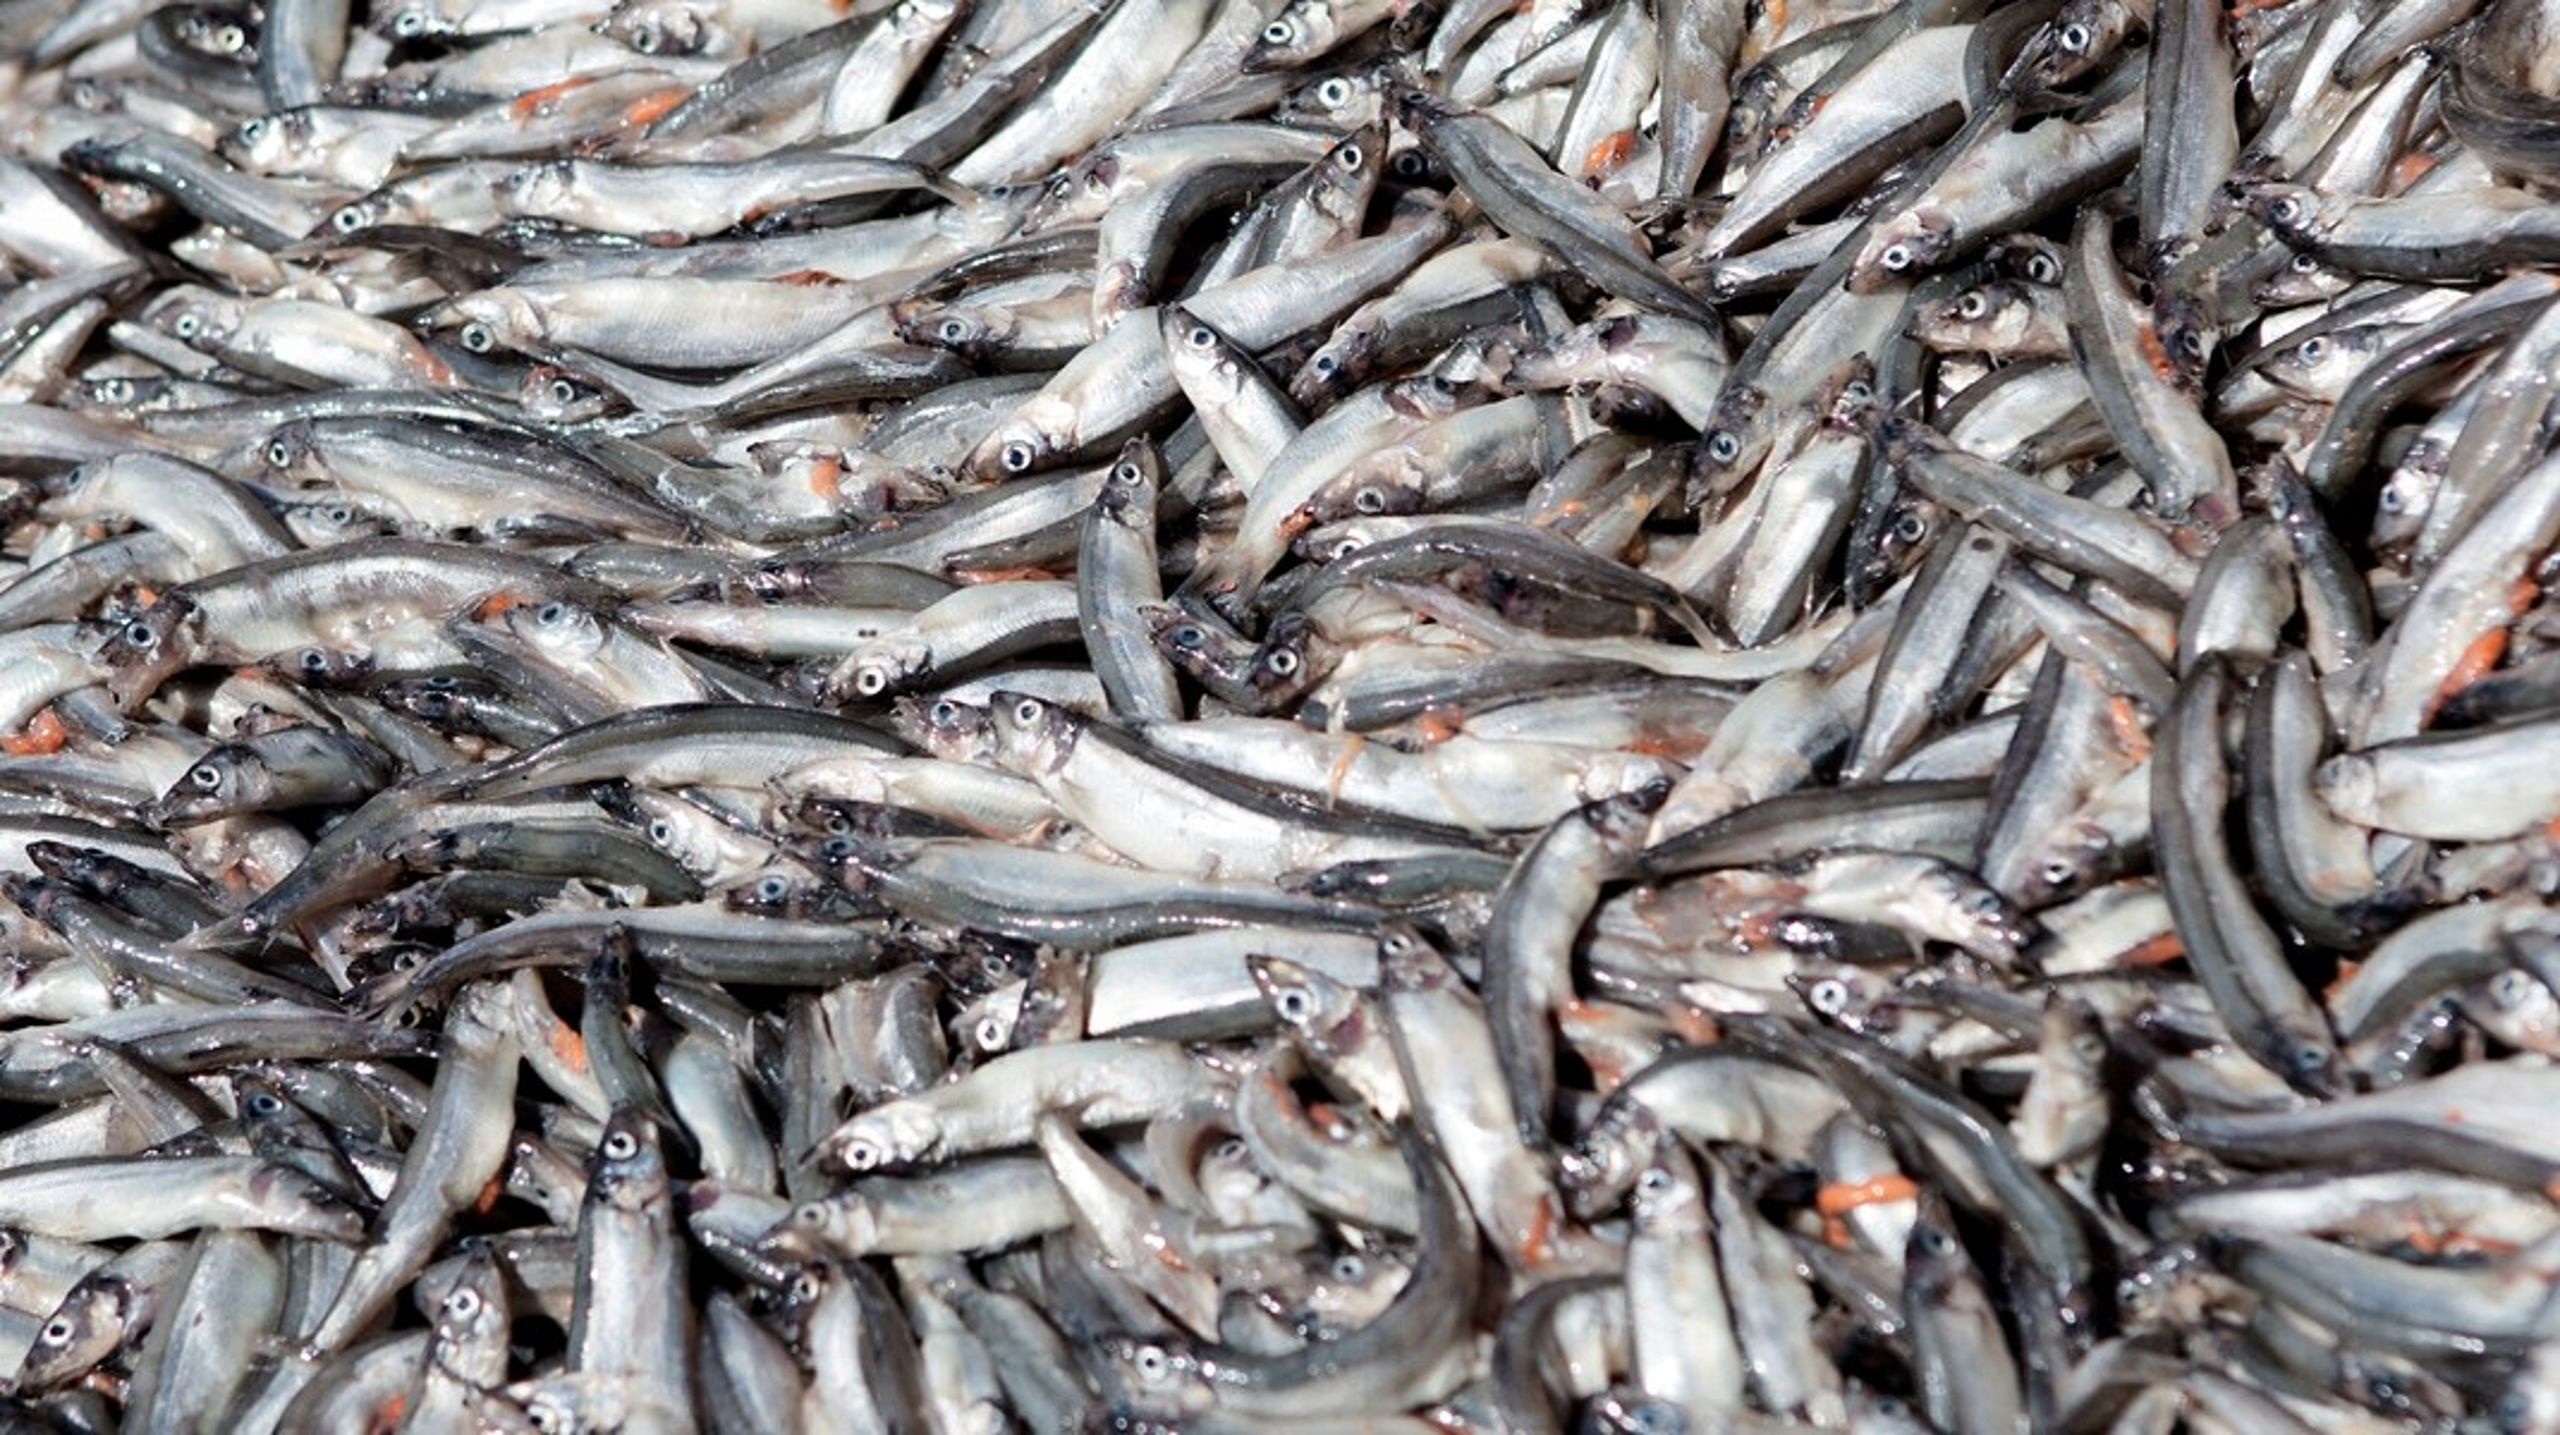 Søren Mark Jensen&nbsp;mener, det er et problem, at der anvendes dansk fanget fisk til at producere foderingredienser til ”at holde liv i den norske lakseproduktion”. Men&nbsp;hovedparten af de fisk, der anvendes til foder, har ikke en umiddelbar værdi som spisefisk, skriver&nbsp;Anne Mette Bæk.